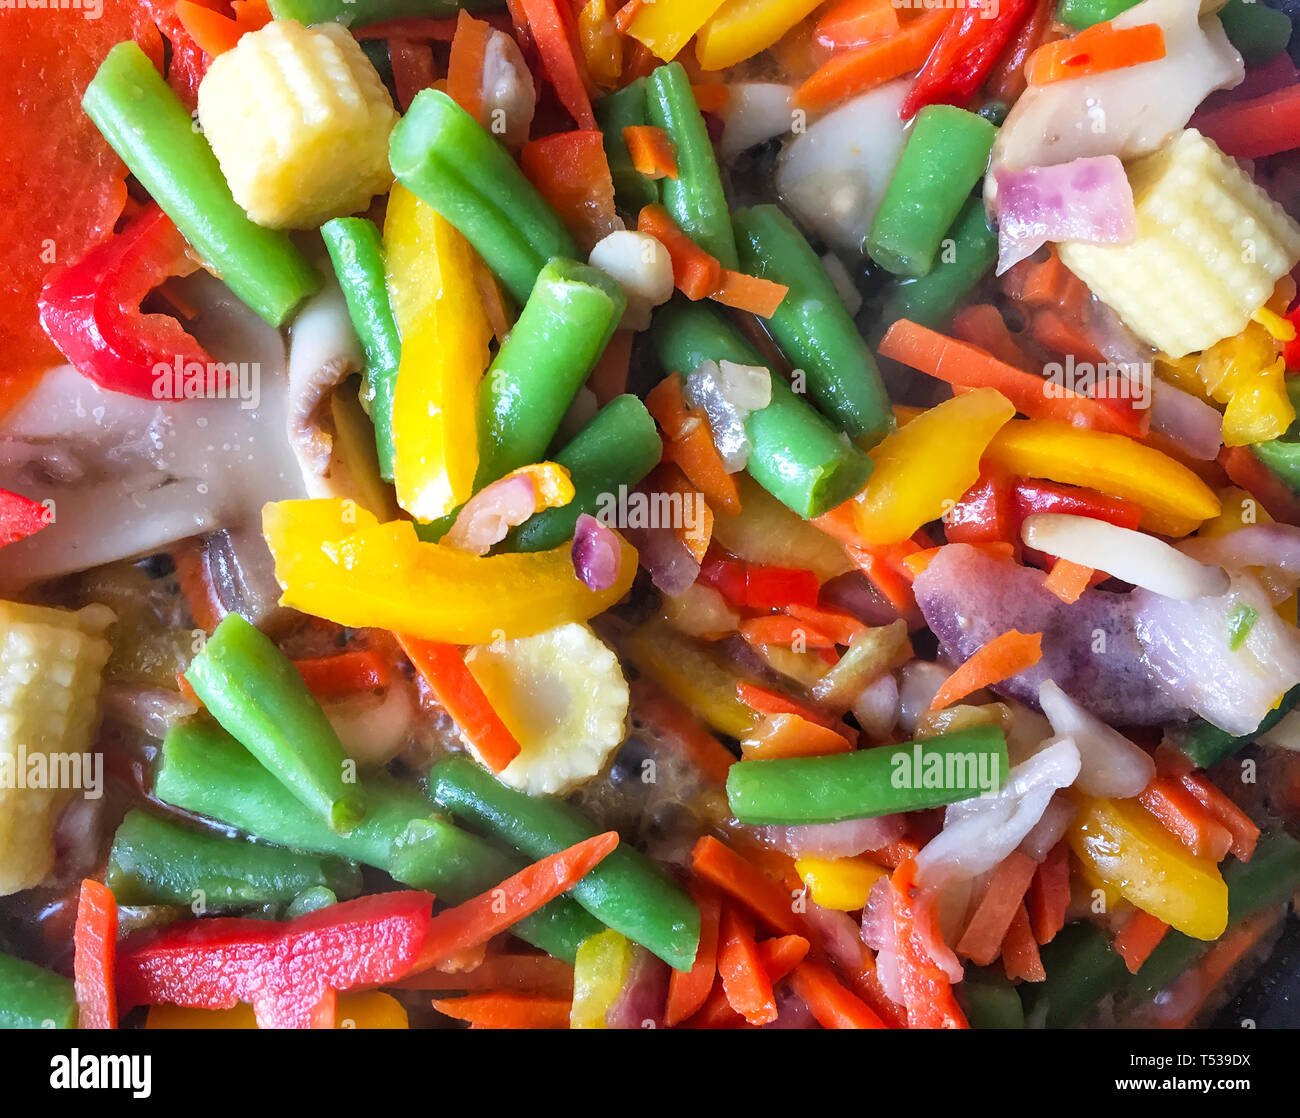 Tranches de légumes frais sont mijotée dans une casserole. Close-up. Fond de légumes Banque D'Images